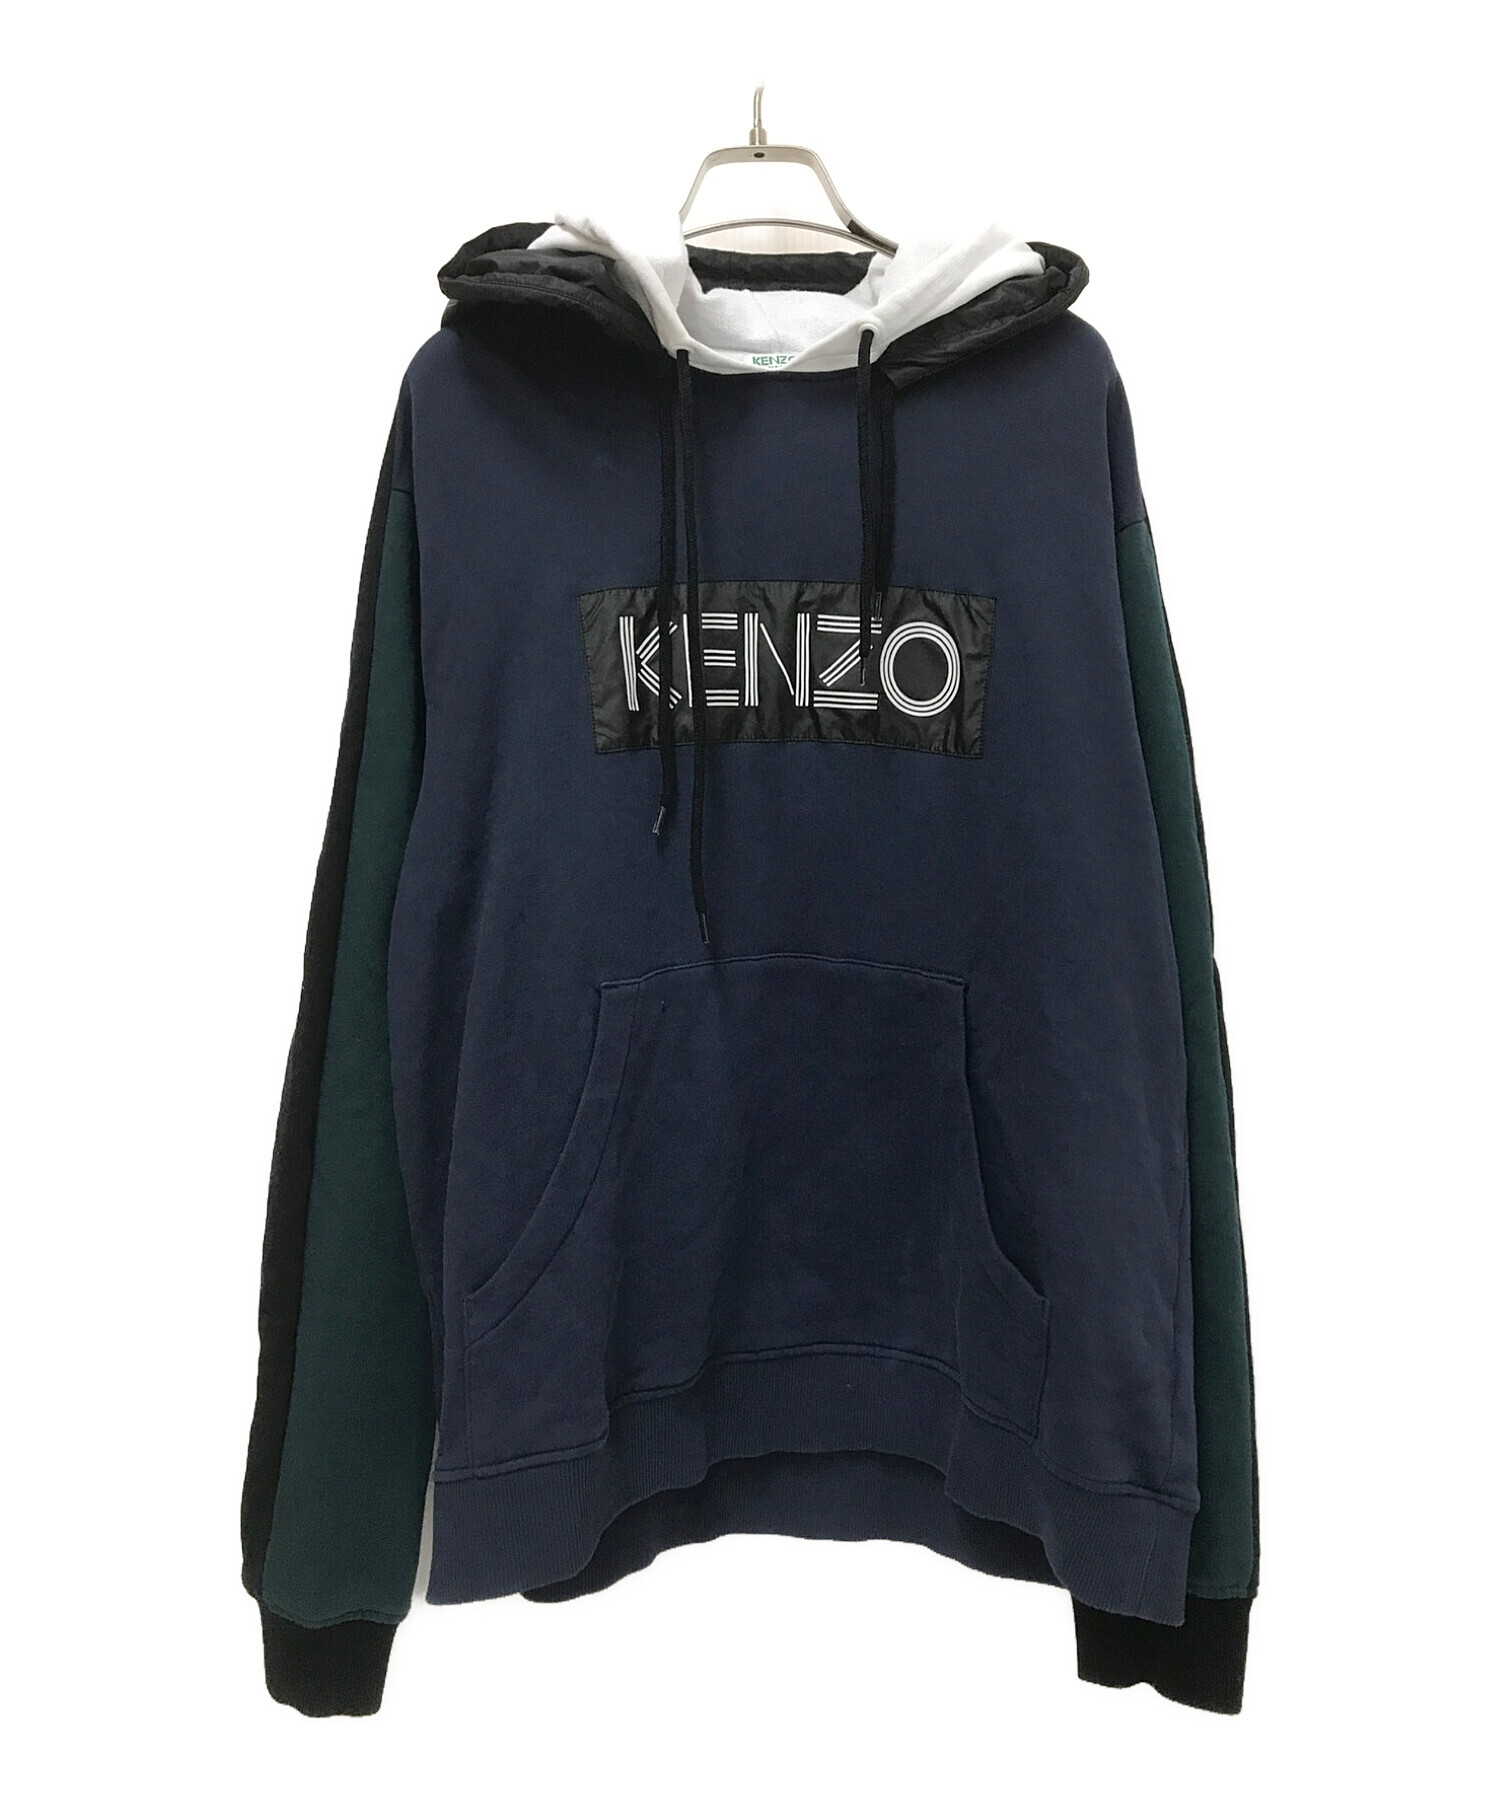 KENZO (ケンゾー) ダブルフードパーカー ネイビー サイズ:S